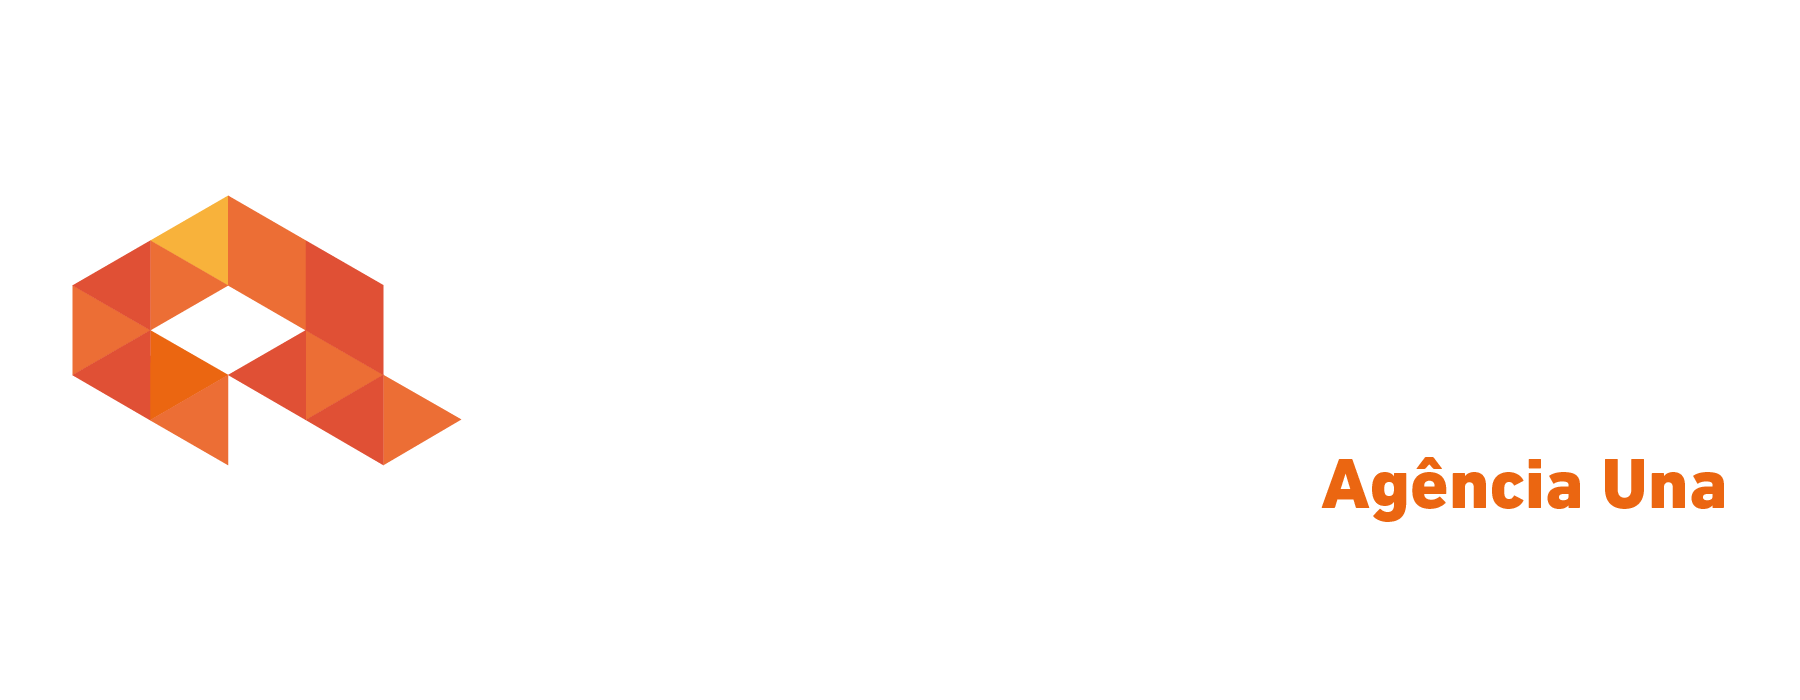 Logo crédito real Crédito Real UNA